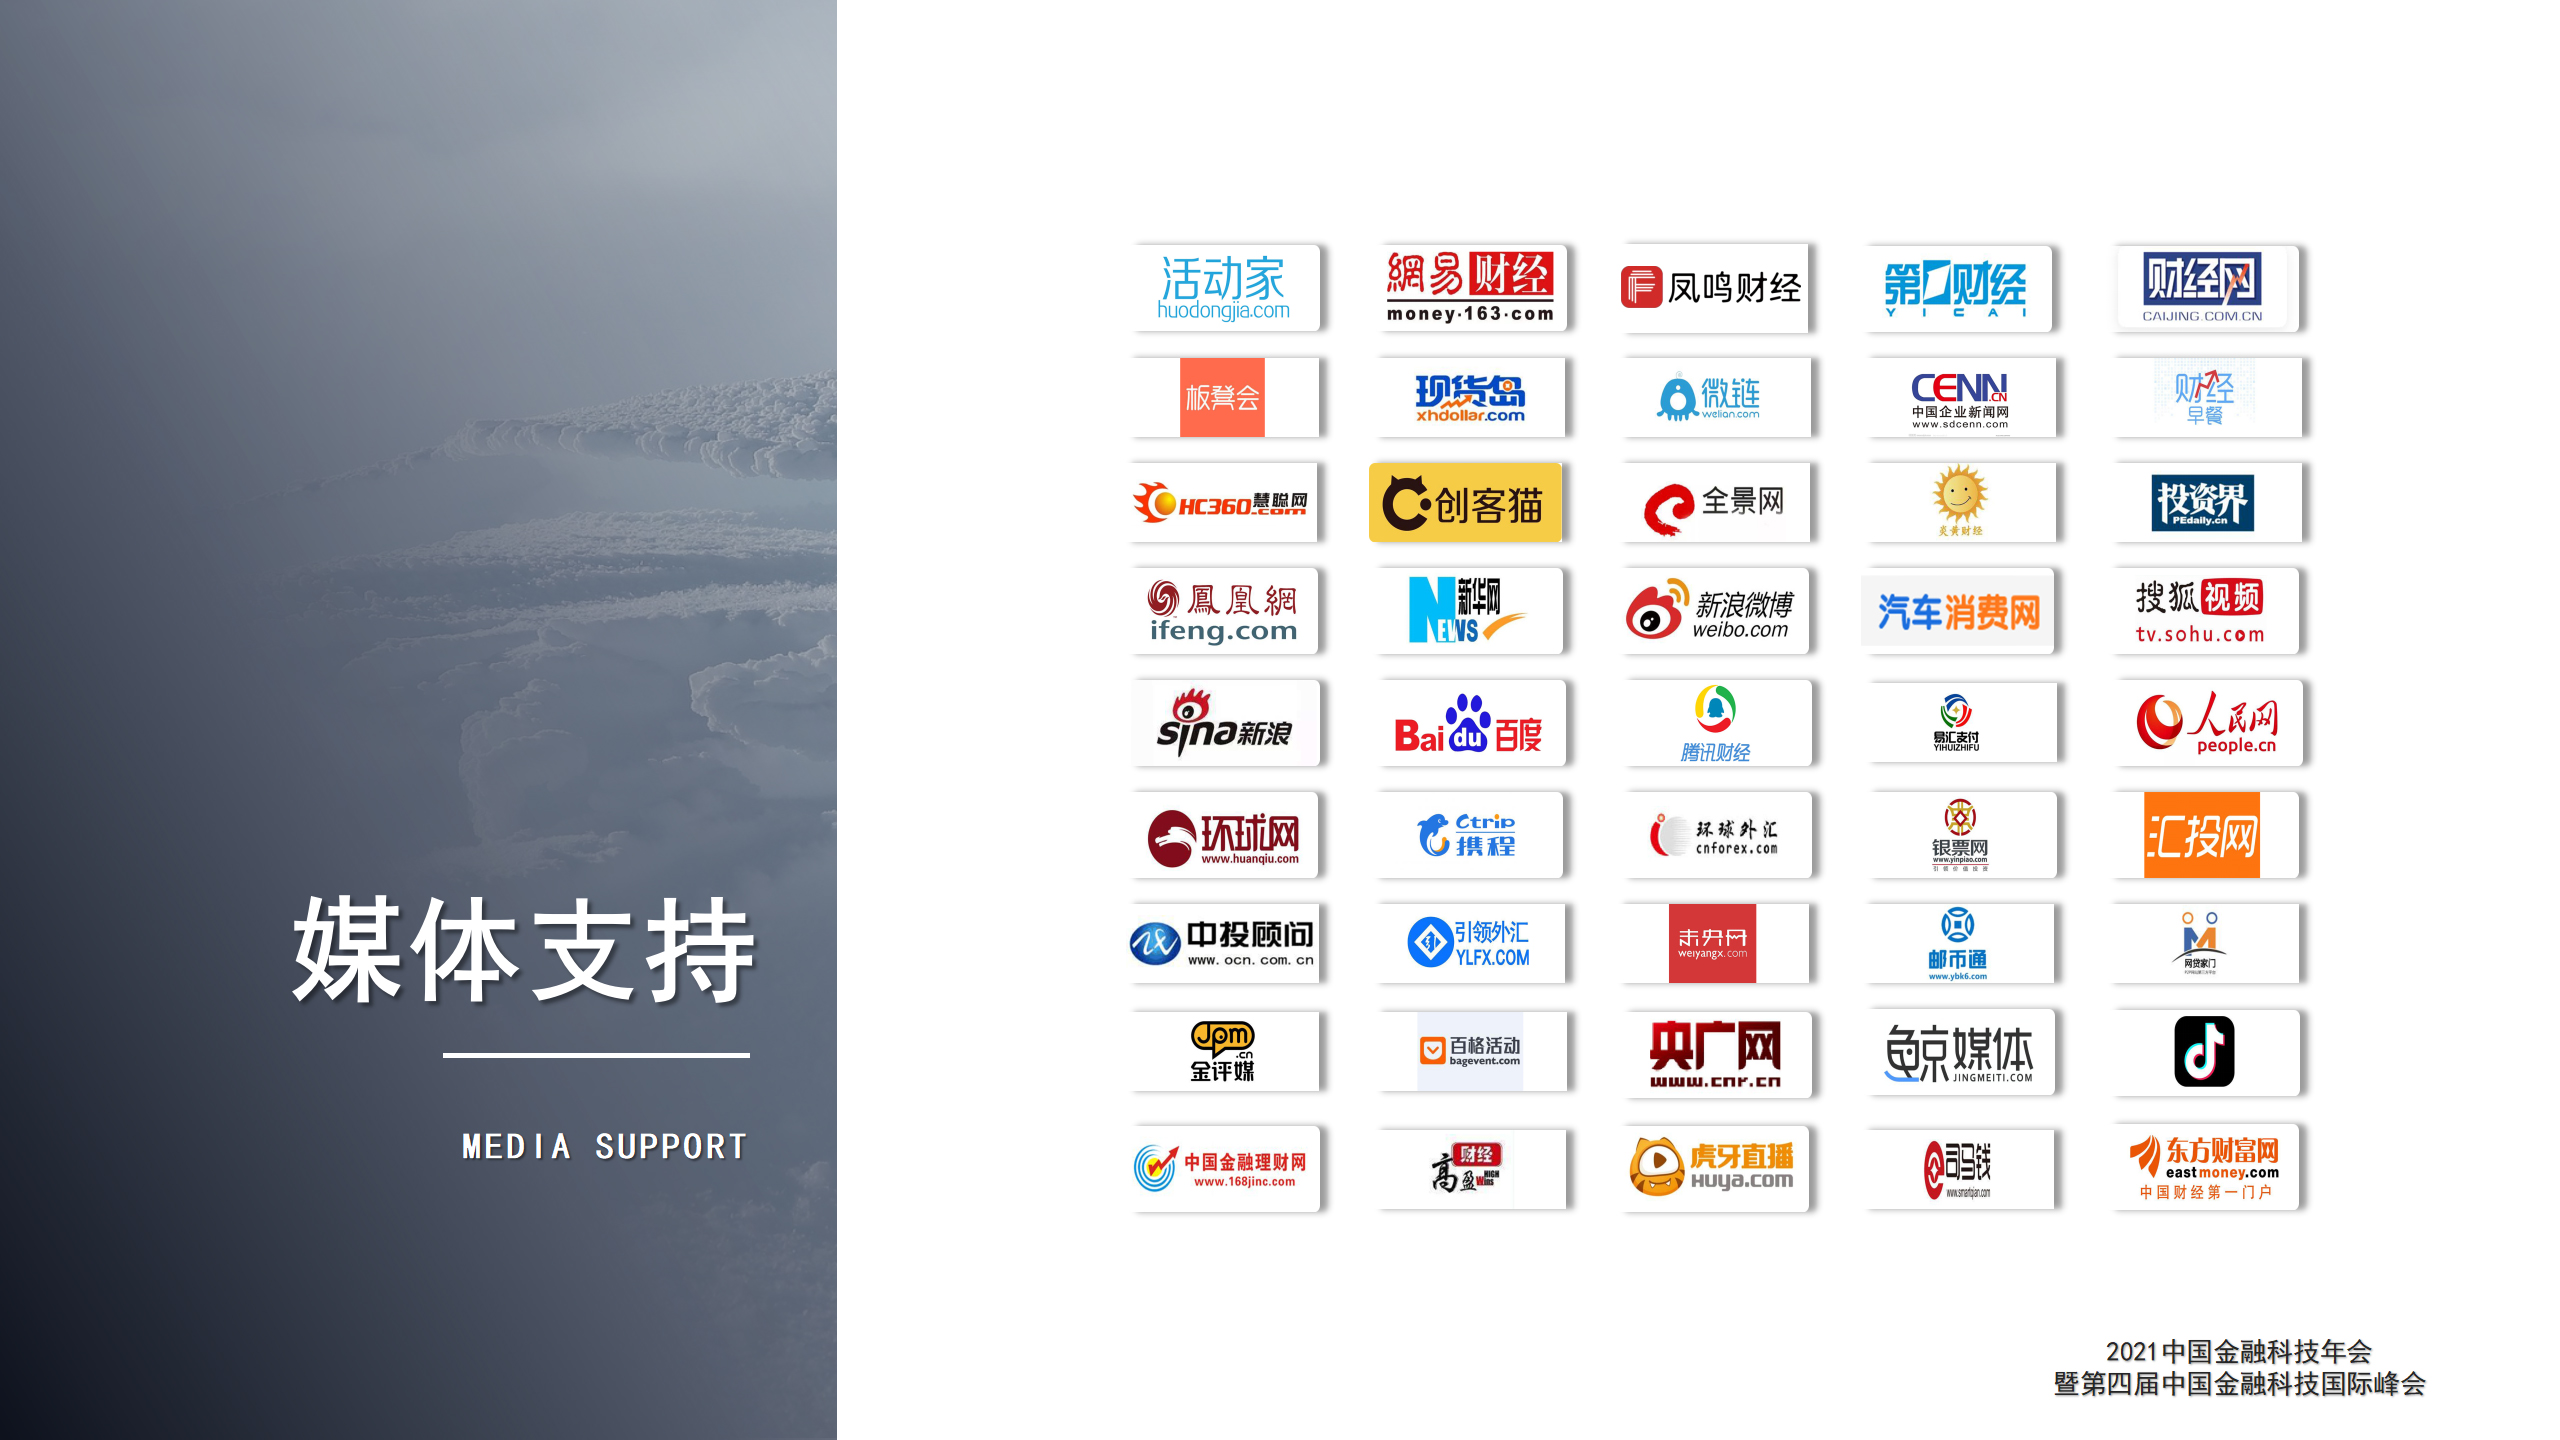 2021中国金融科技年会暨第四届中国金融科技国际峰会